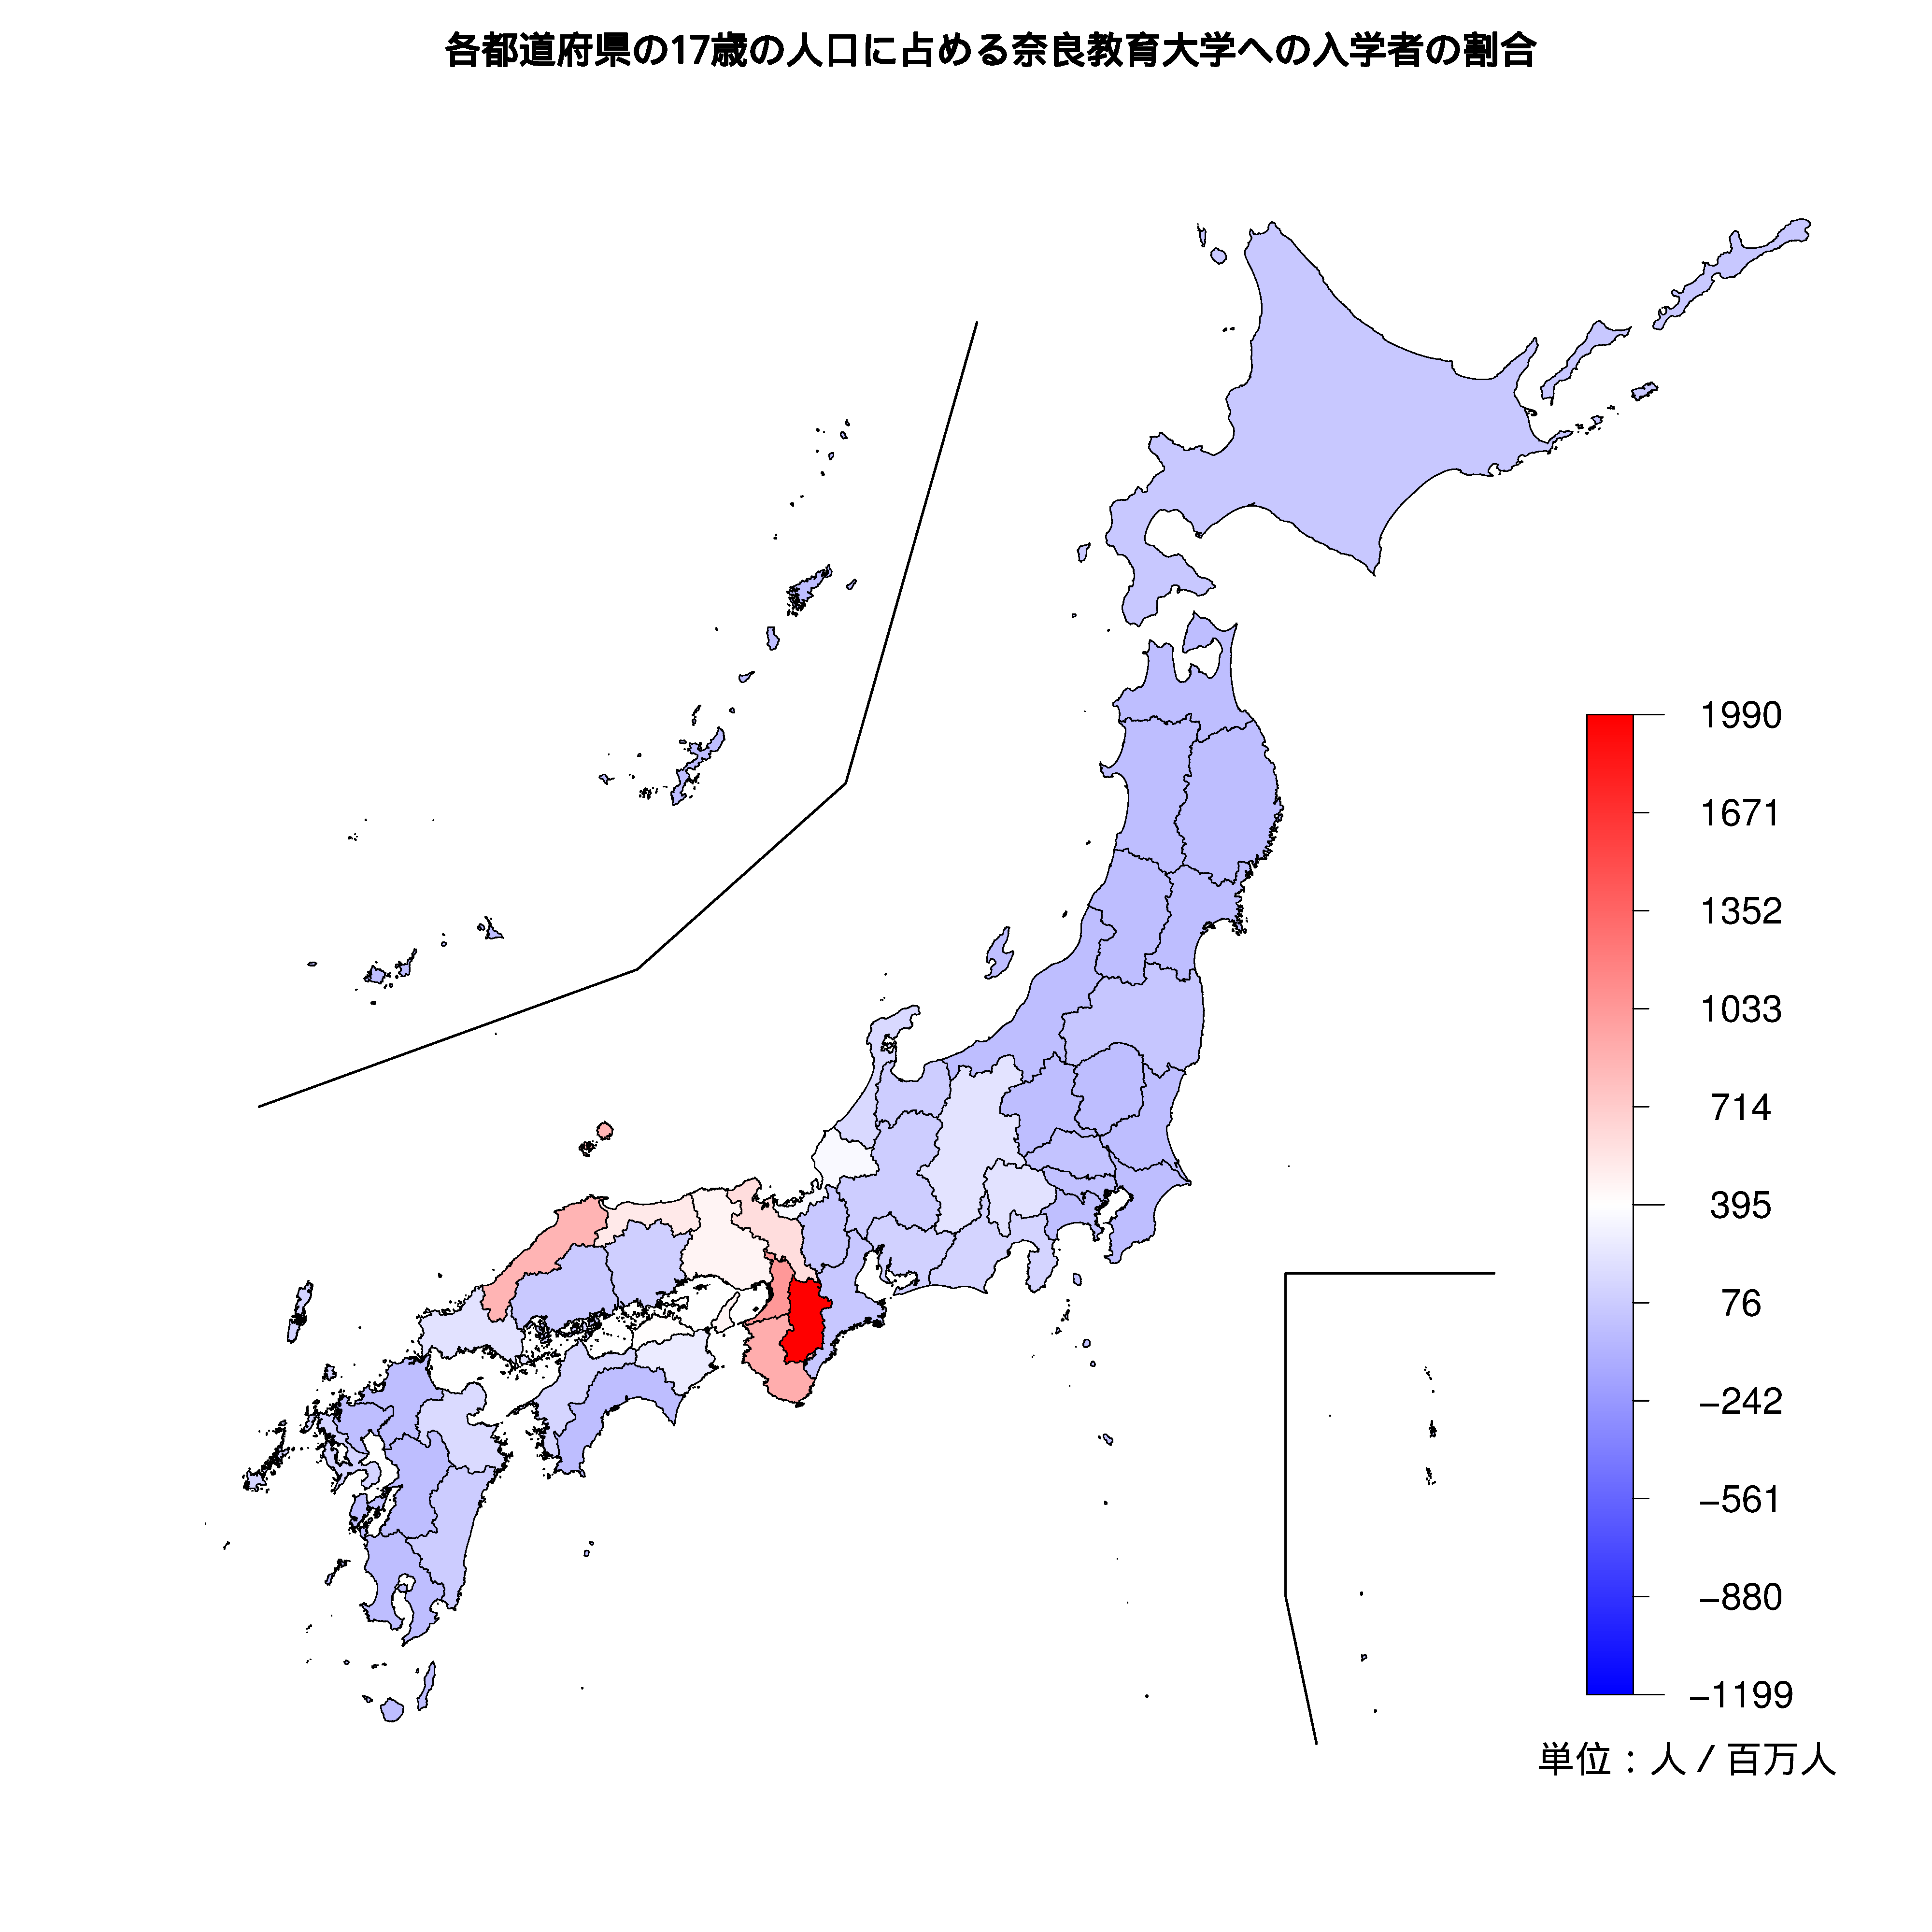 奈良教育大学への入学者が多い都道府県の色分け地図